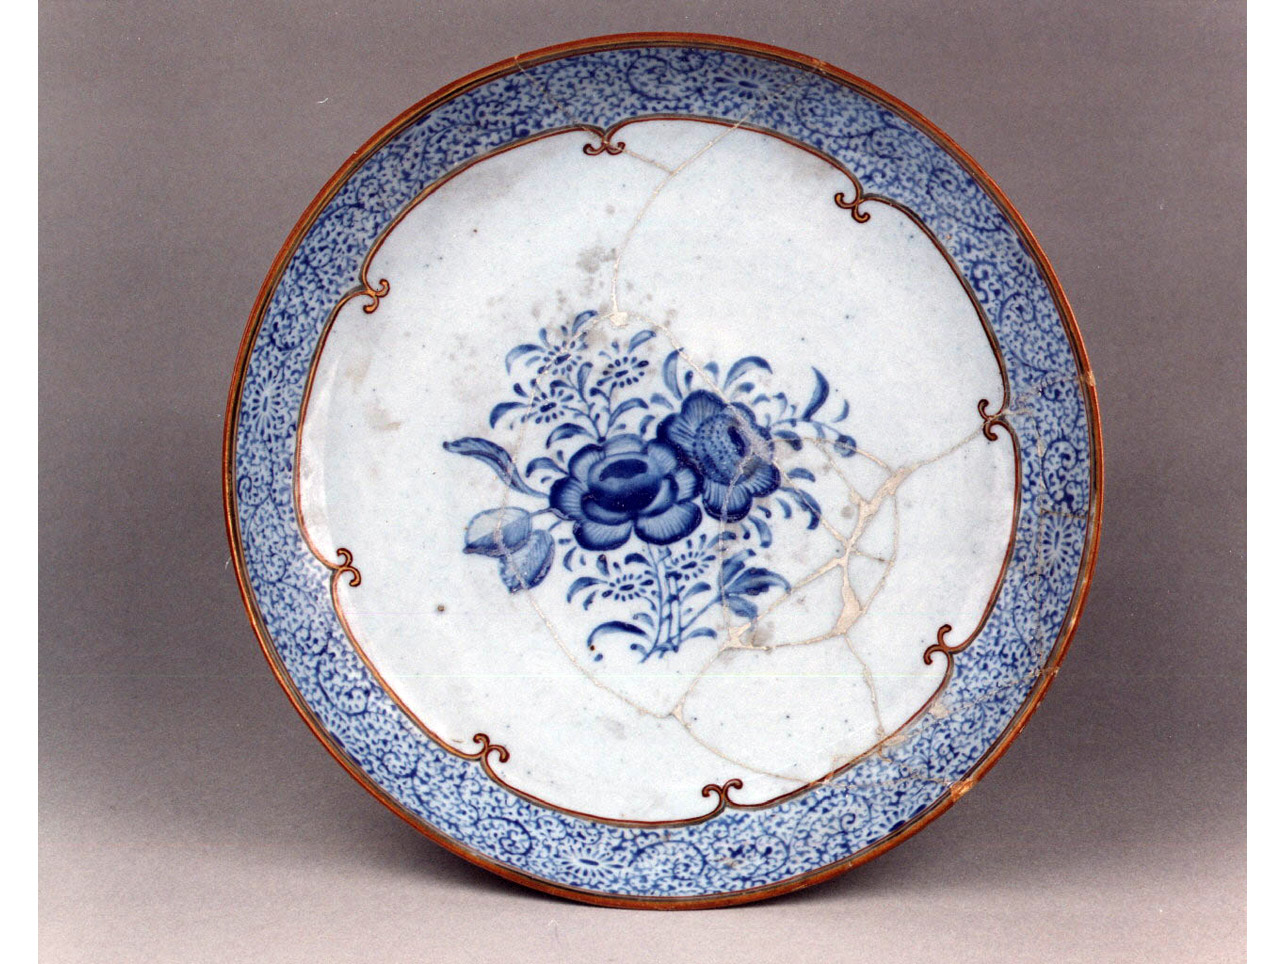 motivi decorativi floreali (piatto) - manifattura cinese (seconda metà sec. XVIII)